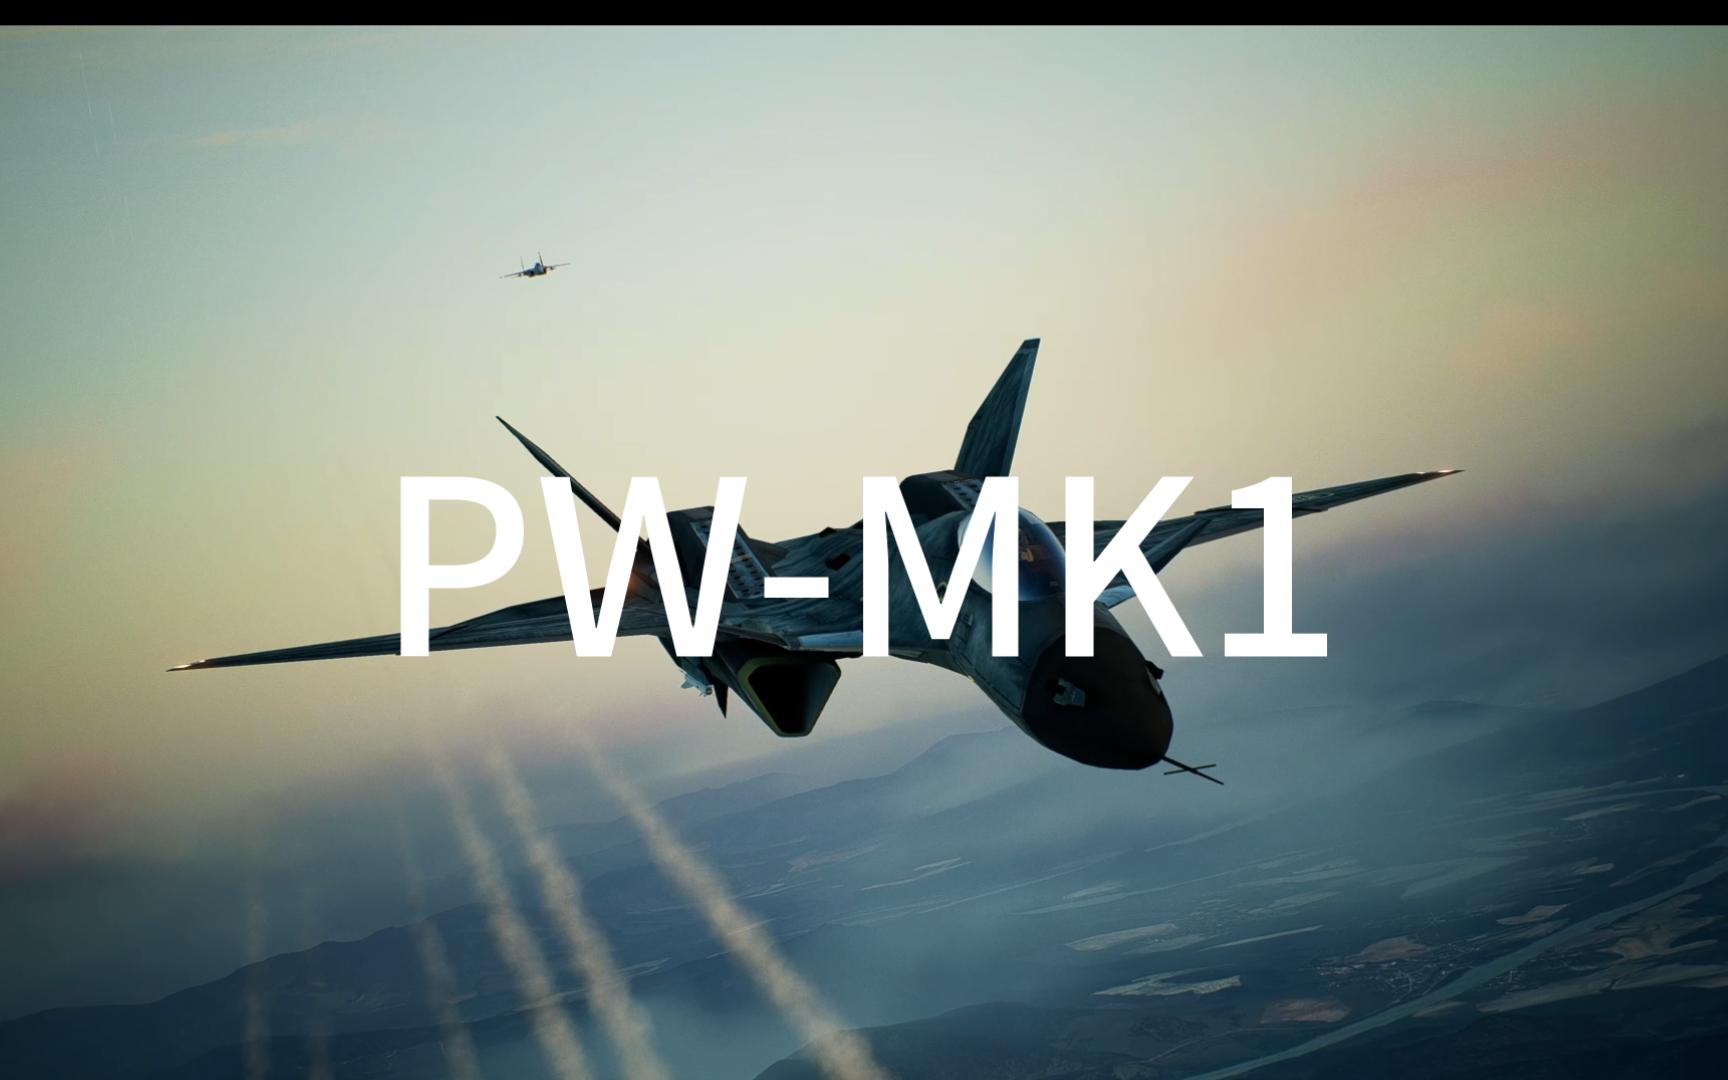 【Ace Combat 7】不论做出什么机动都合理的究极机体——PW MK.1